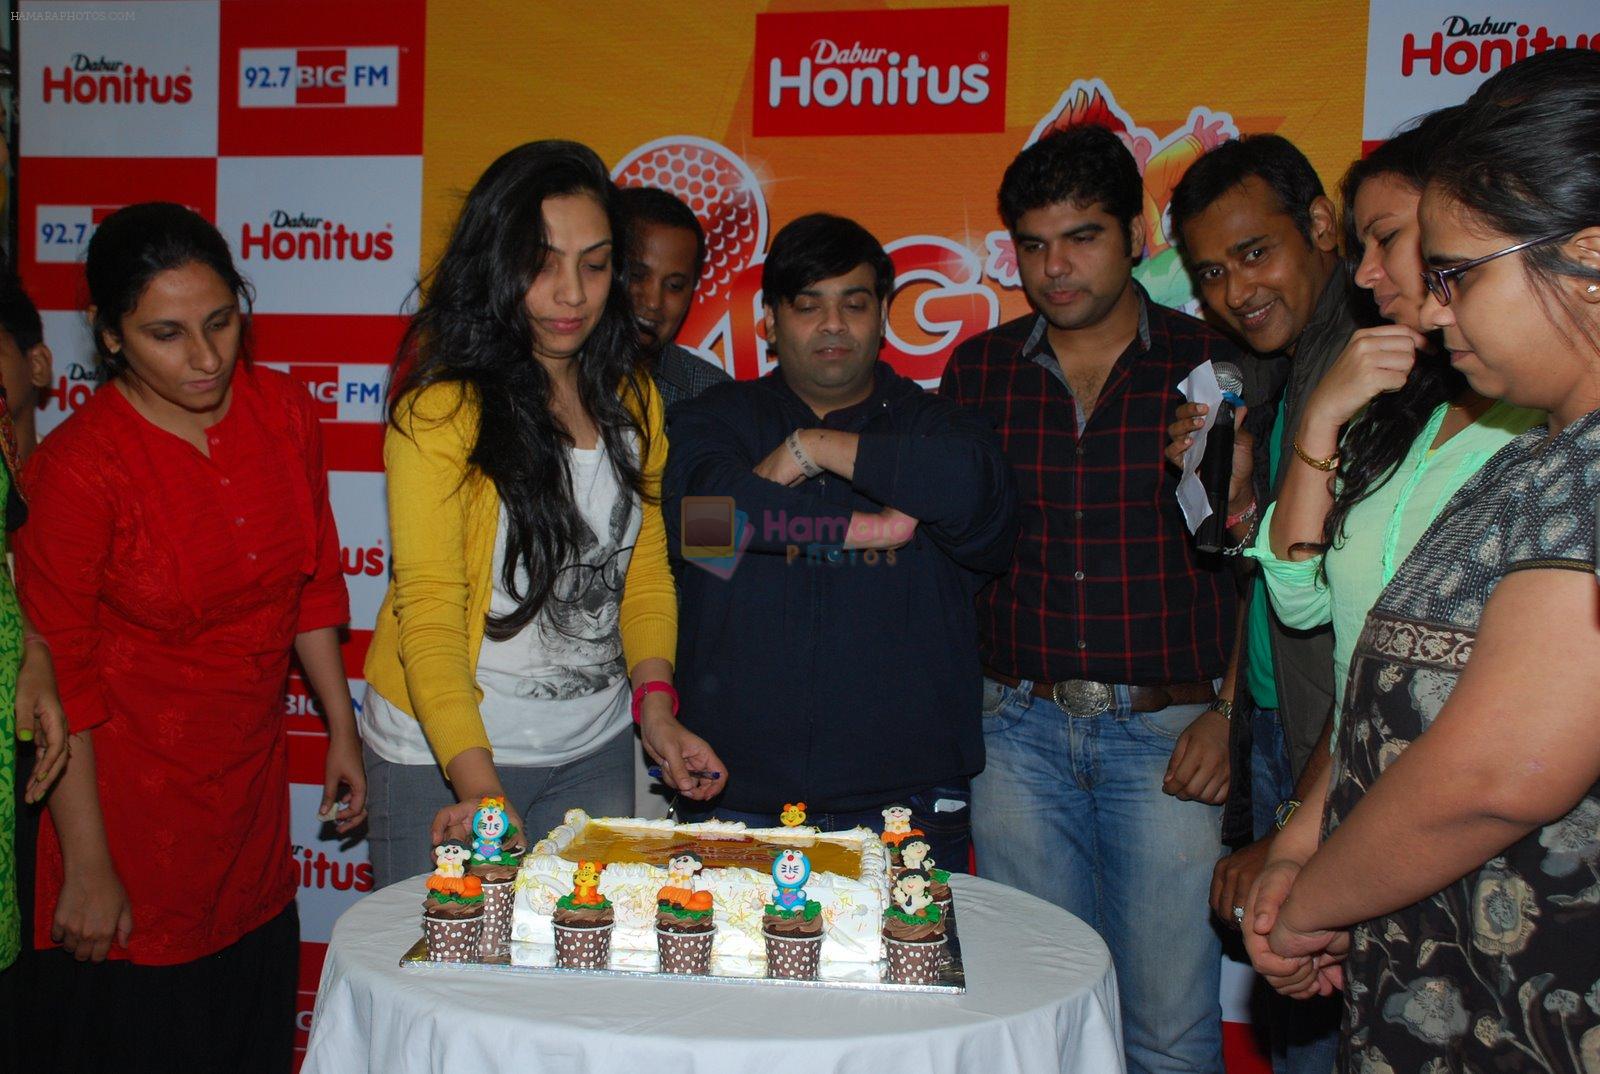 Kiku Sharda at Big FM in Mumbai on 13th Nov 2014